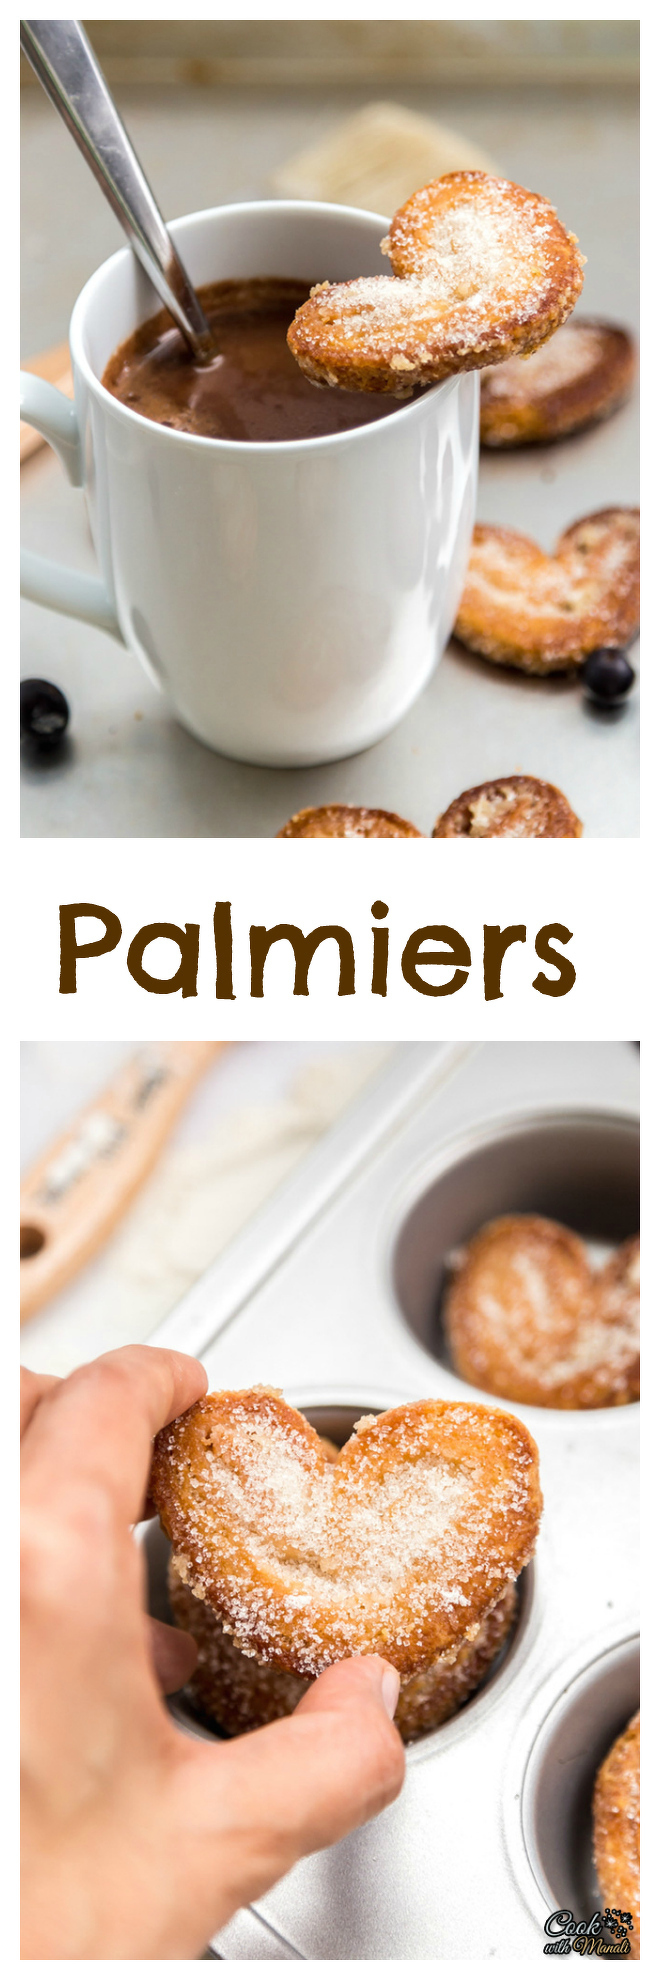 Palmiers-Collage-nocwm